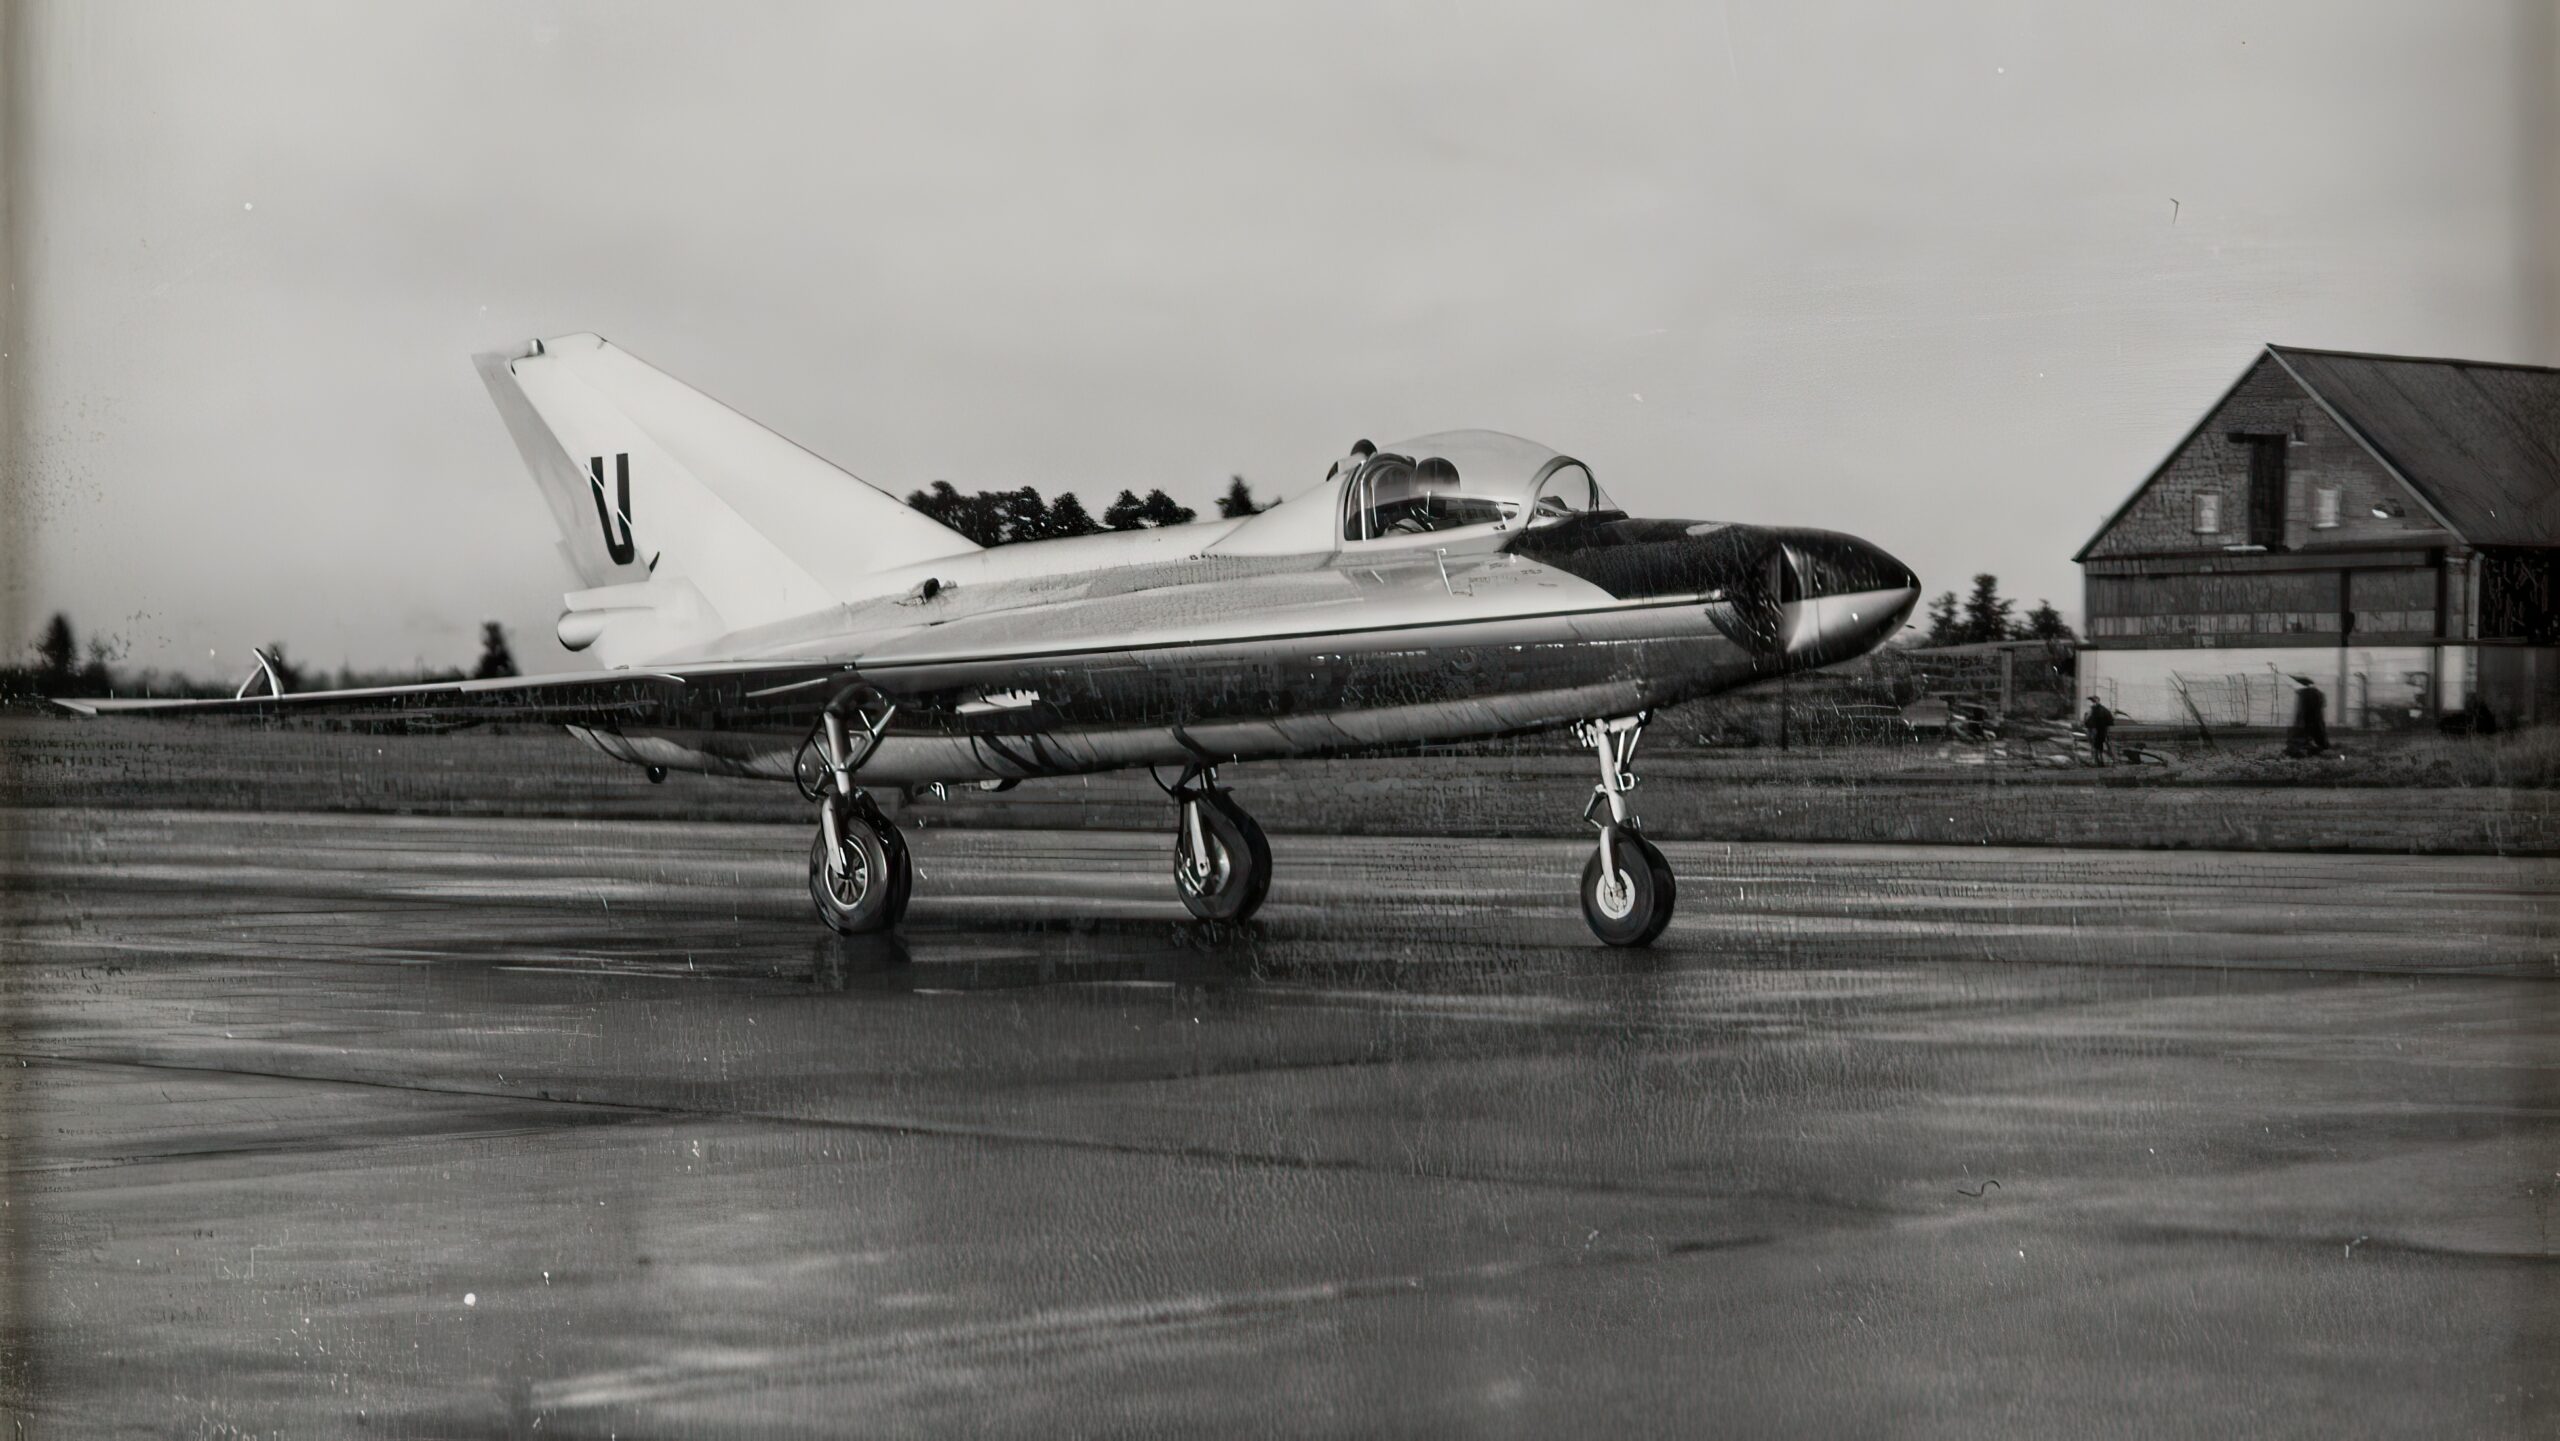 Saab 210 or Lilldraken ("The Little Kite") prototype